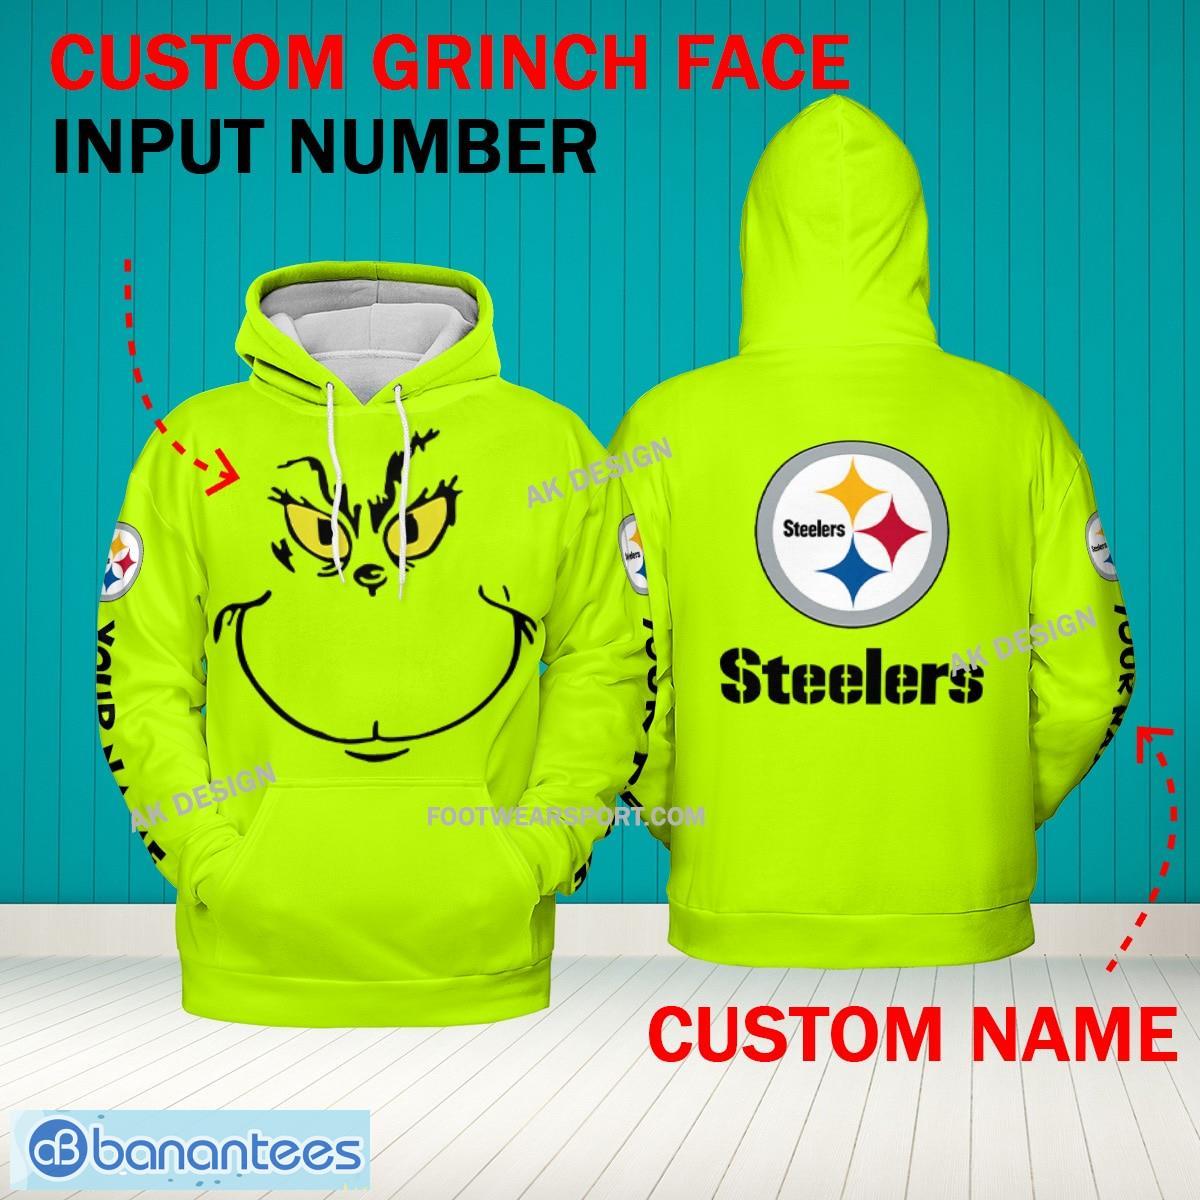 Grinch Face Pittsburgh Steelers 3D Hoodie, Zip Hoodie, Sweater Green AOP Custom Number And Name - Grinch Face NFL Pittsburgh Steelers 3D Hoodie